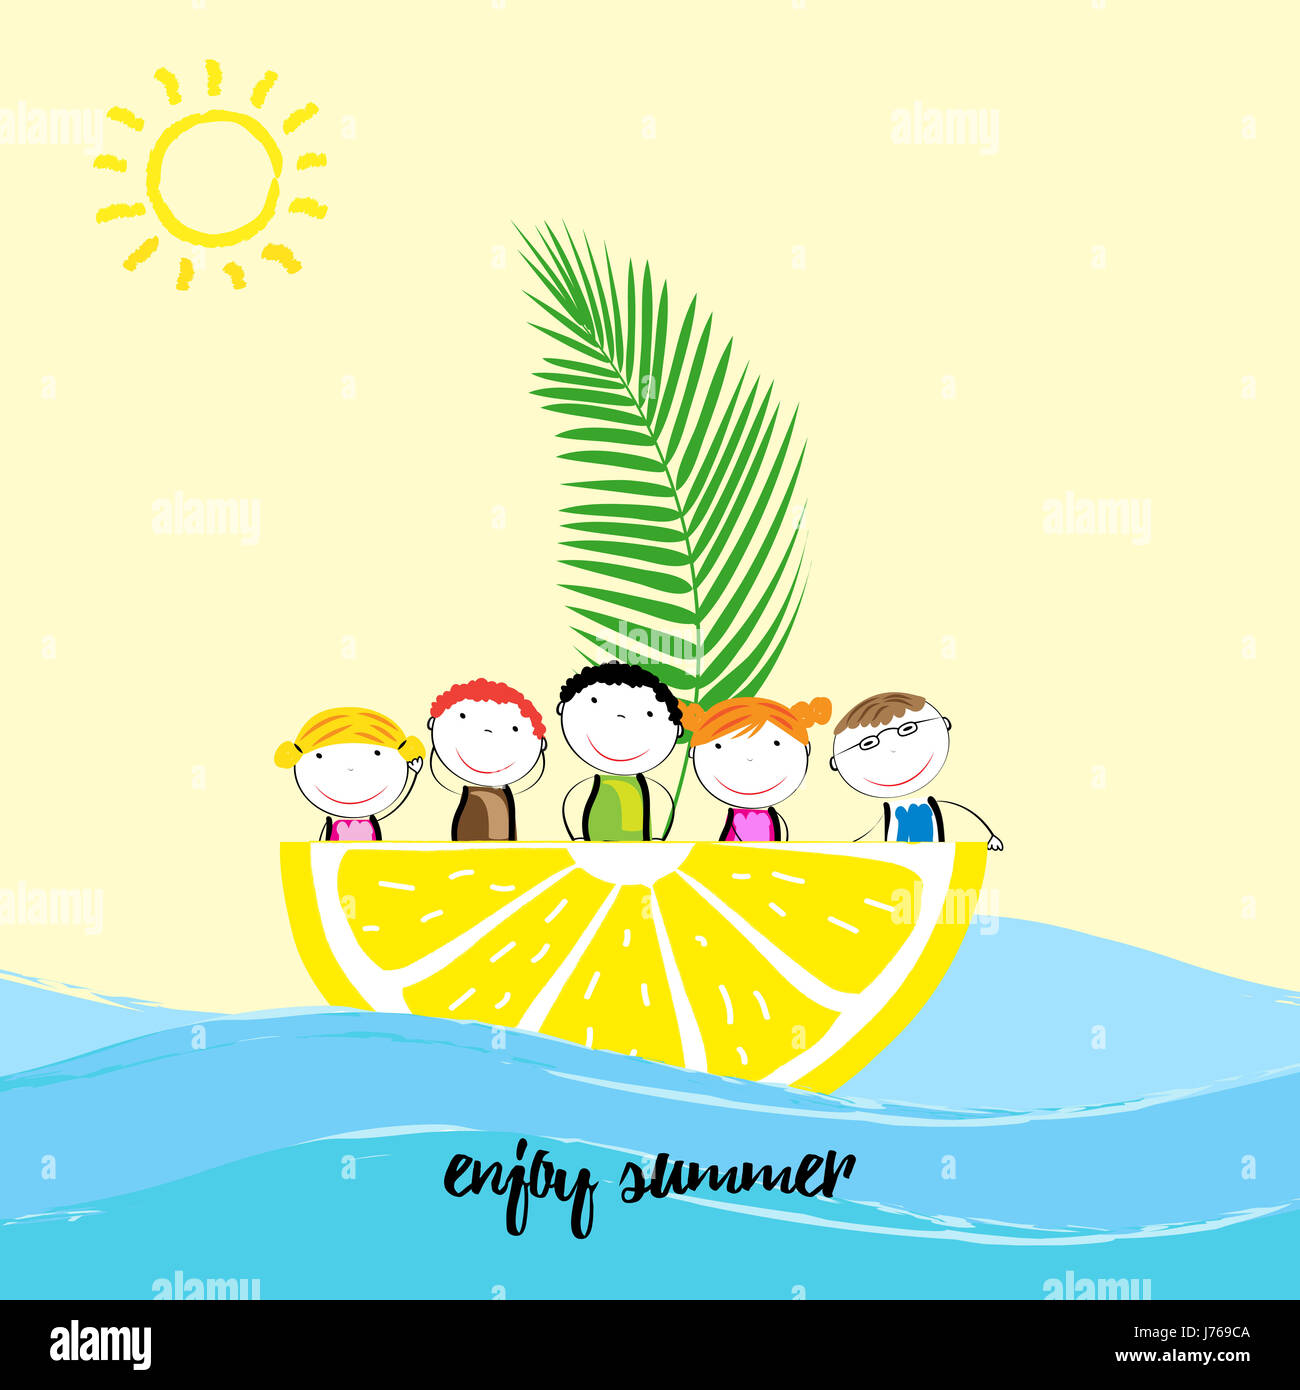 Niños sanos y felices en un barco con fruta fresca Foto de stock